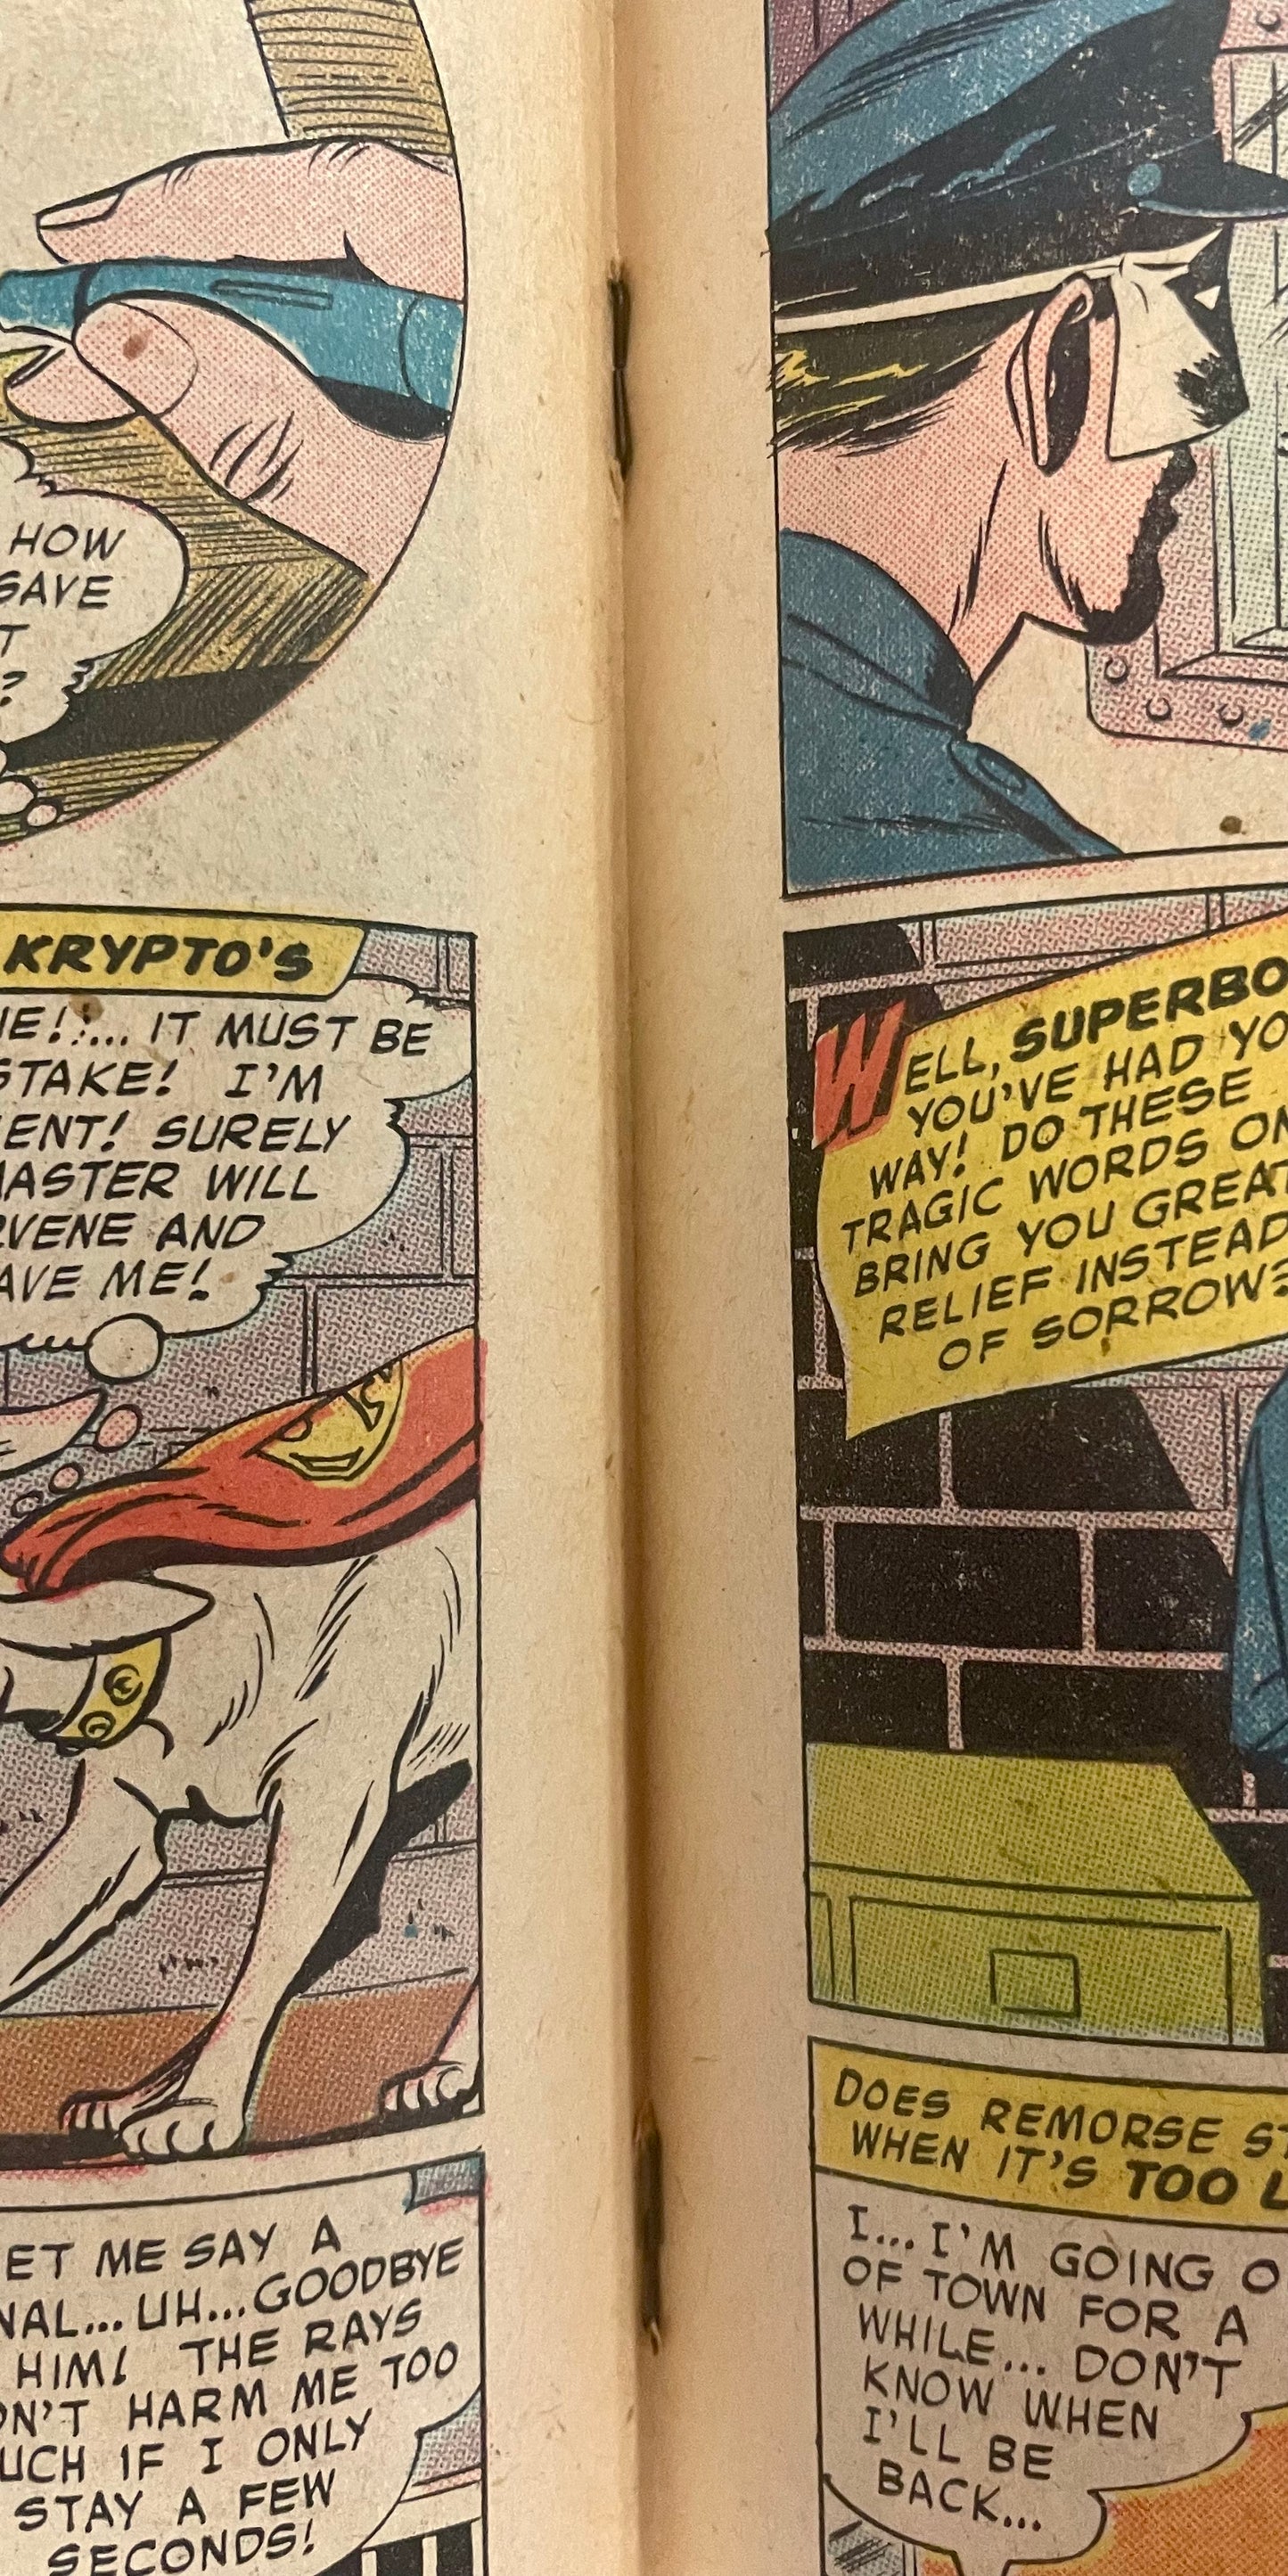 DC Comics Superboy No. 67